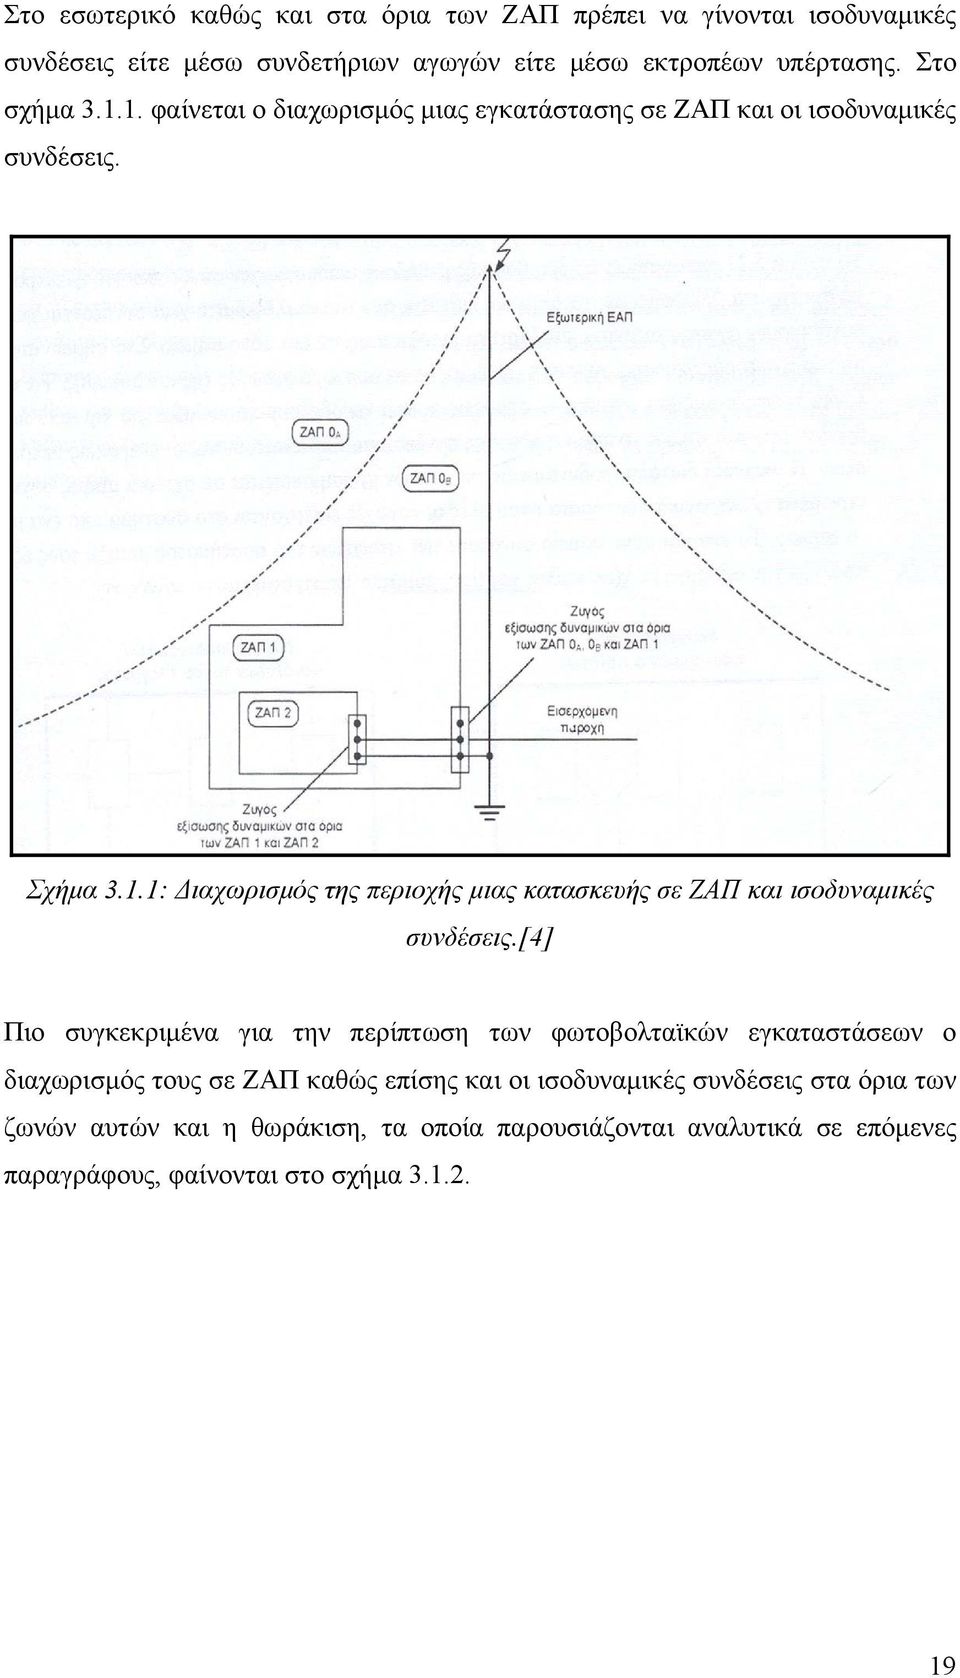 [4] Πιο συγκεκριμένα για την περίπτωση των φωτοβολταϊκών εγκαταστάσεων ο διαχωρισμός τους σε ΖΑΠ καθώς επίσης και οι ισοδυναμικές συνδέσεις στα όρια